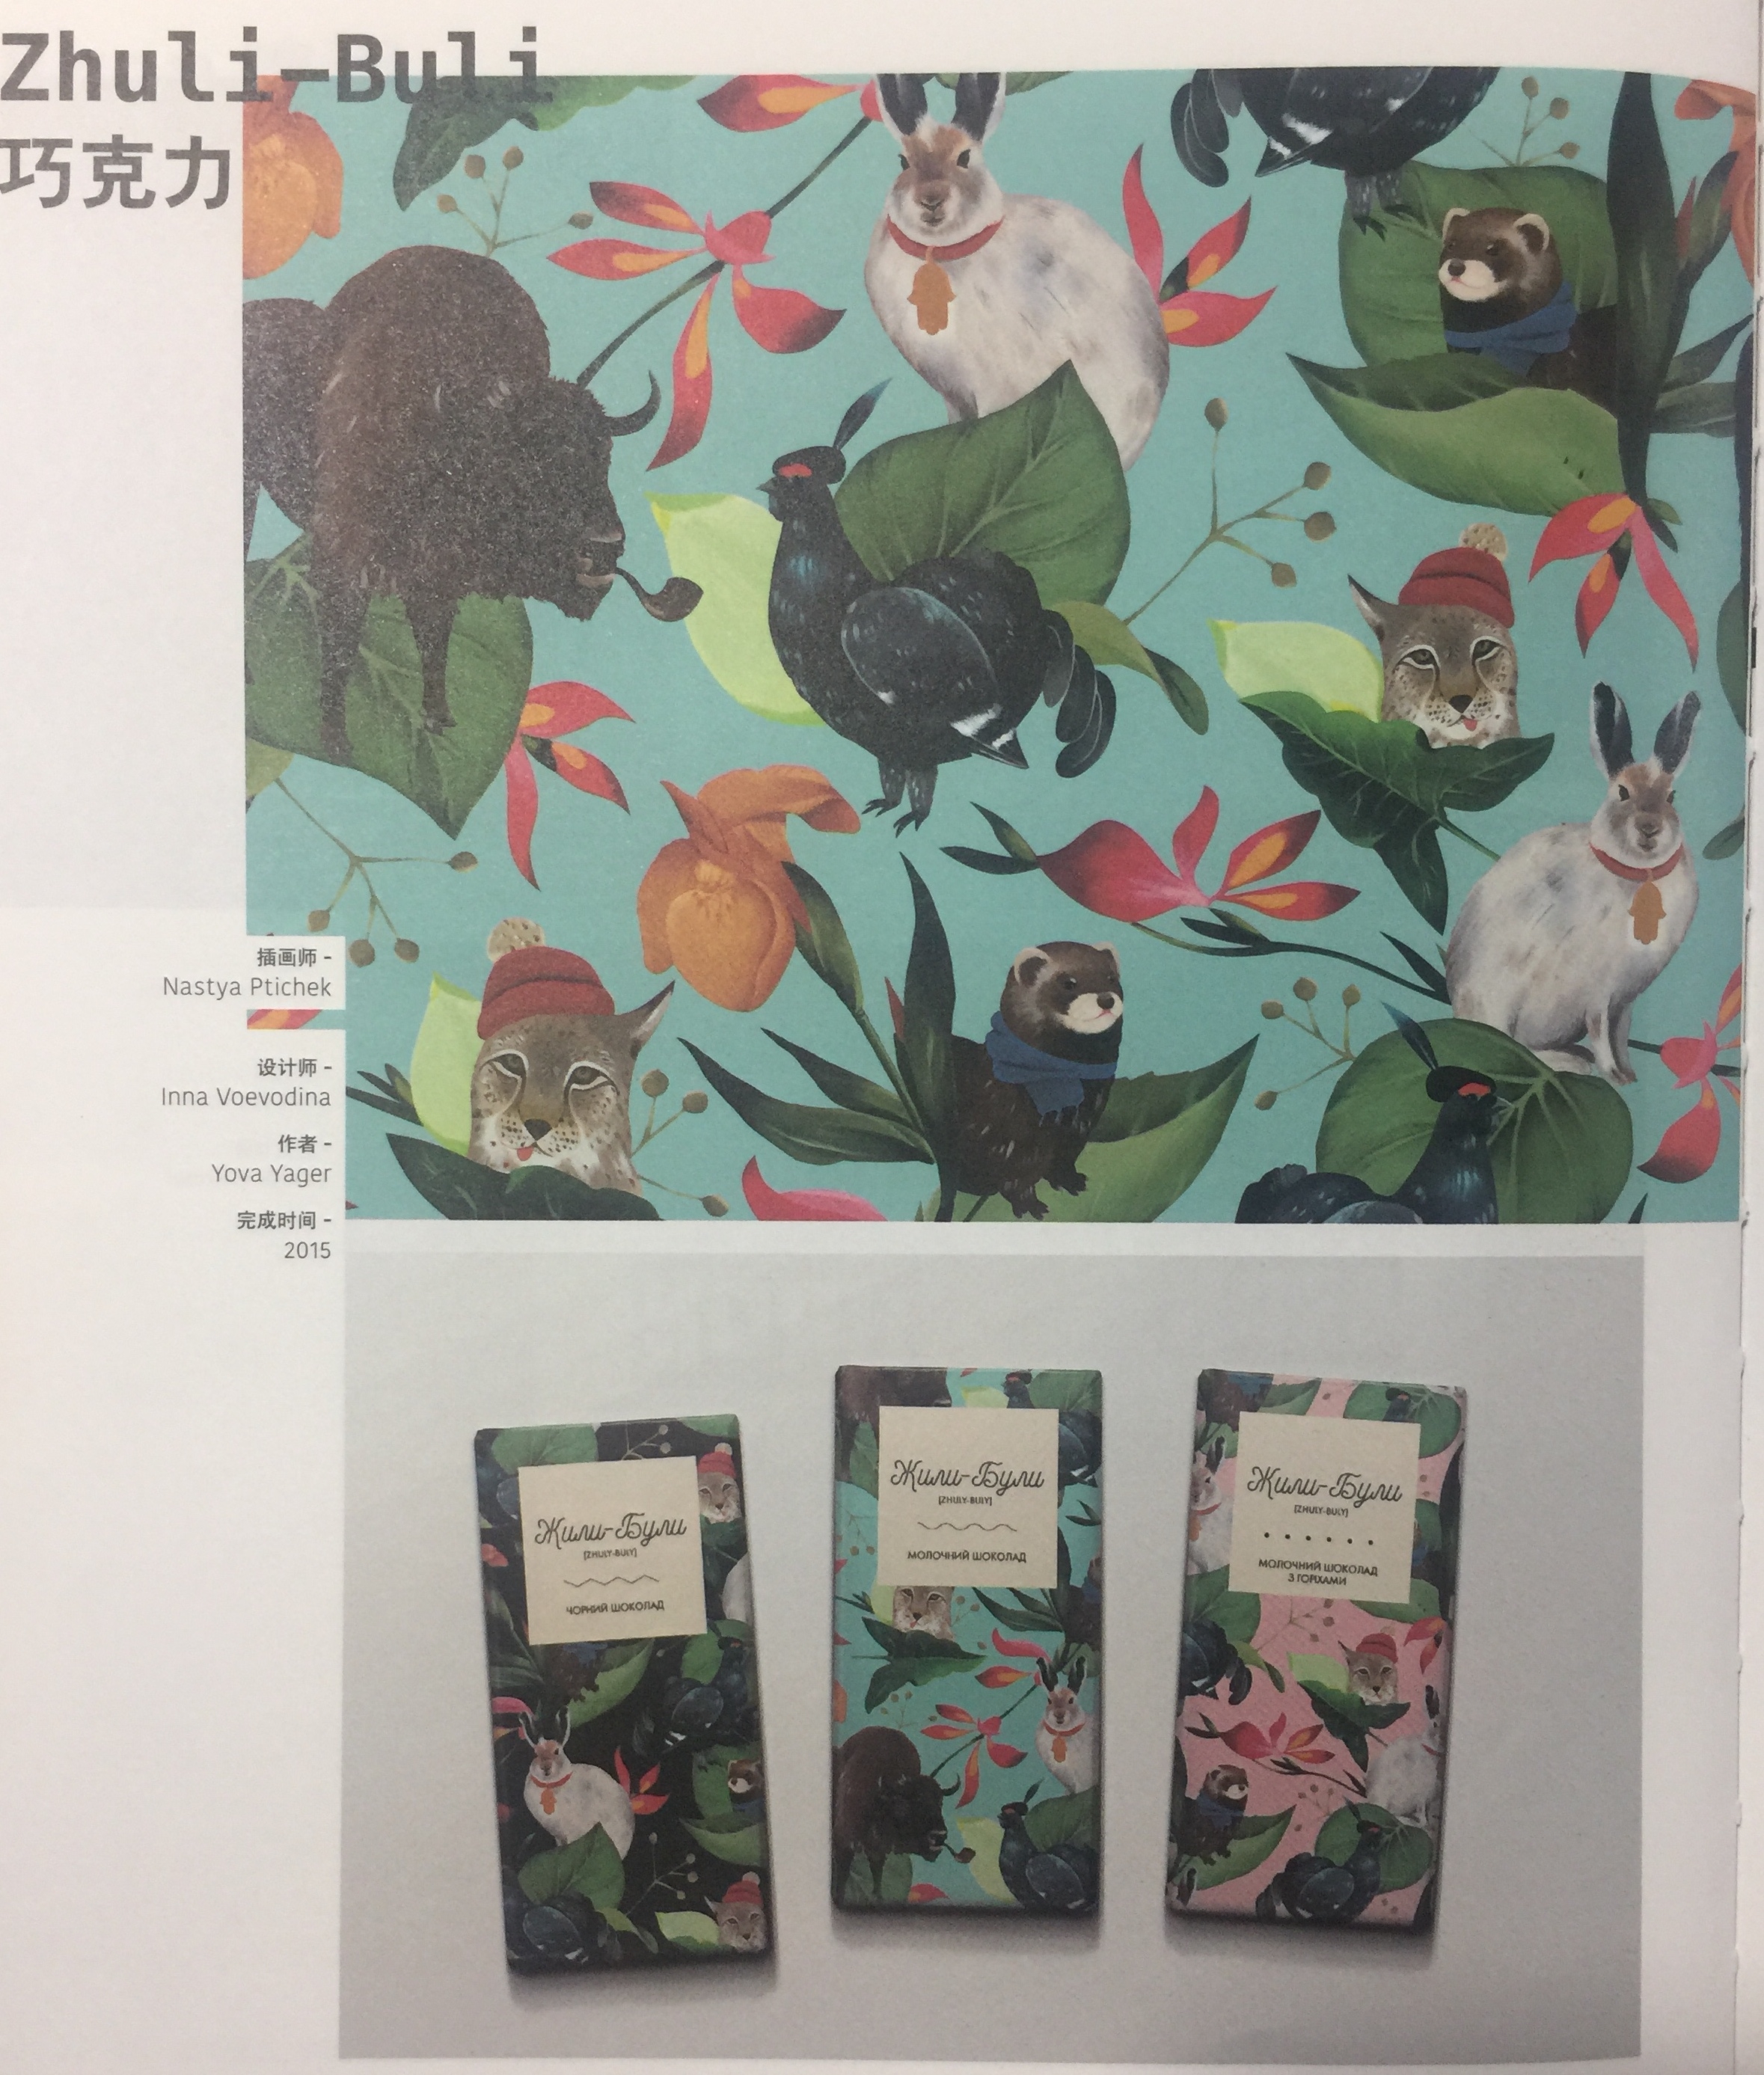 巧克力包装设计,列举的十种不同的动物和植物图片为灵感设计了这组包装